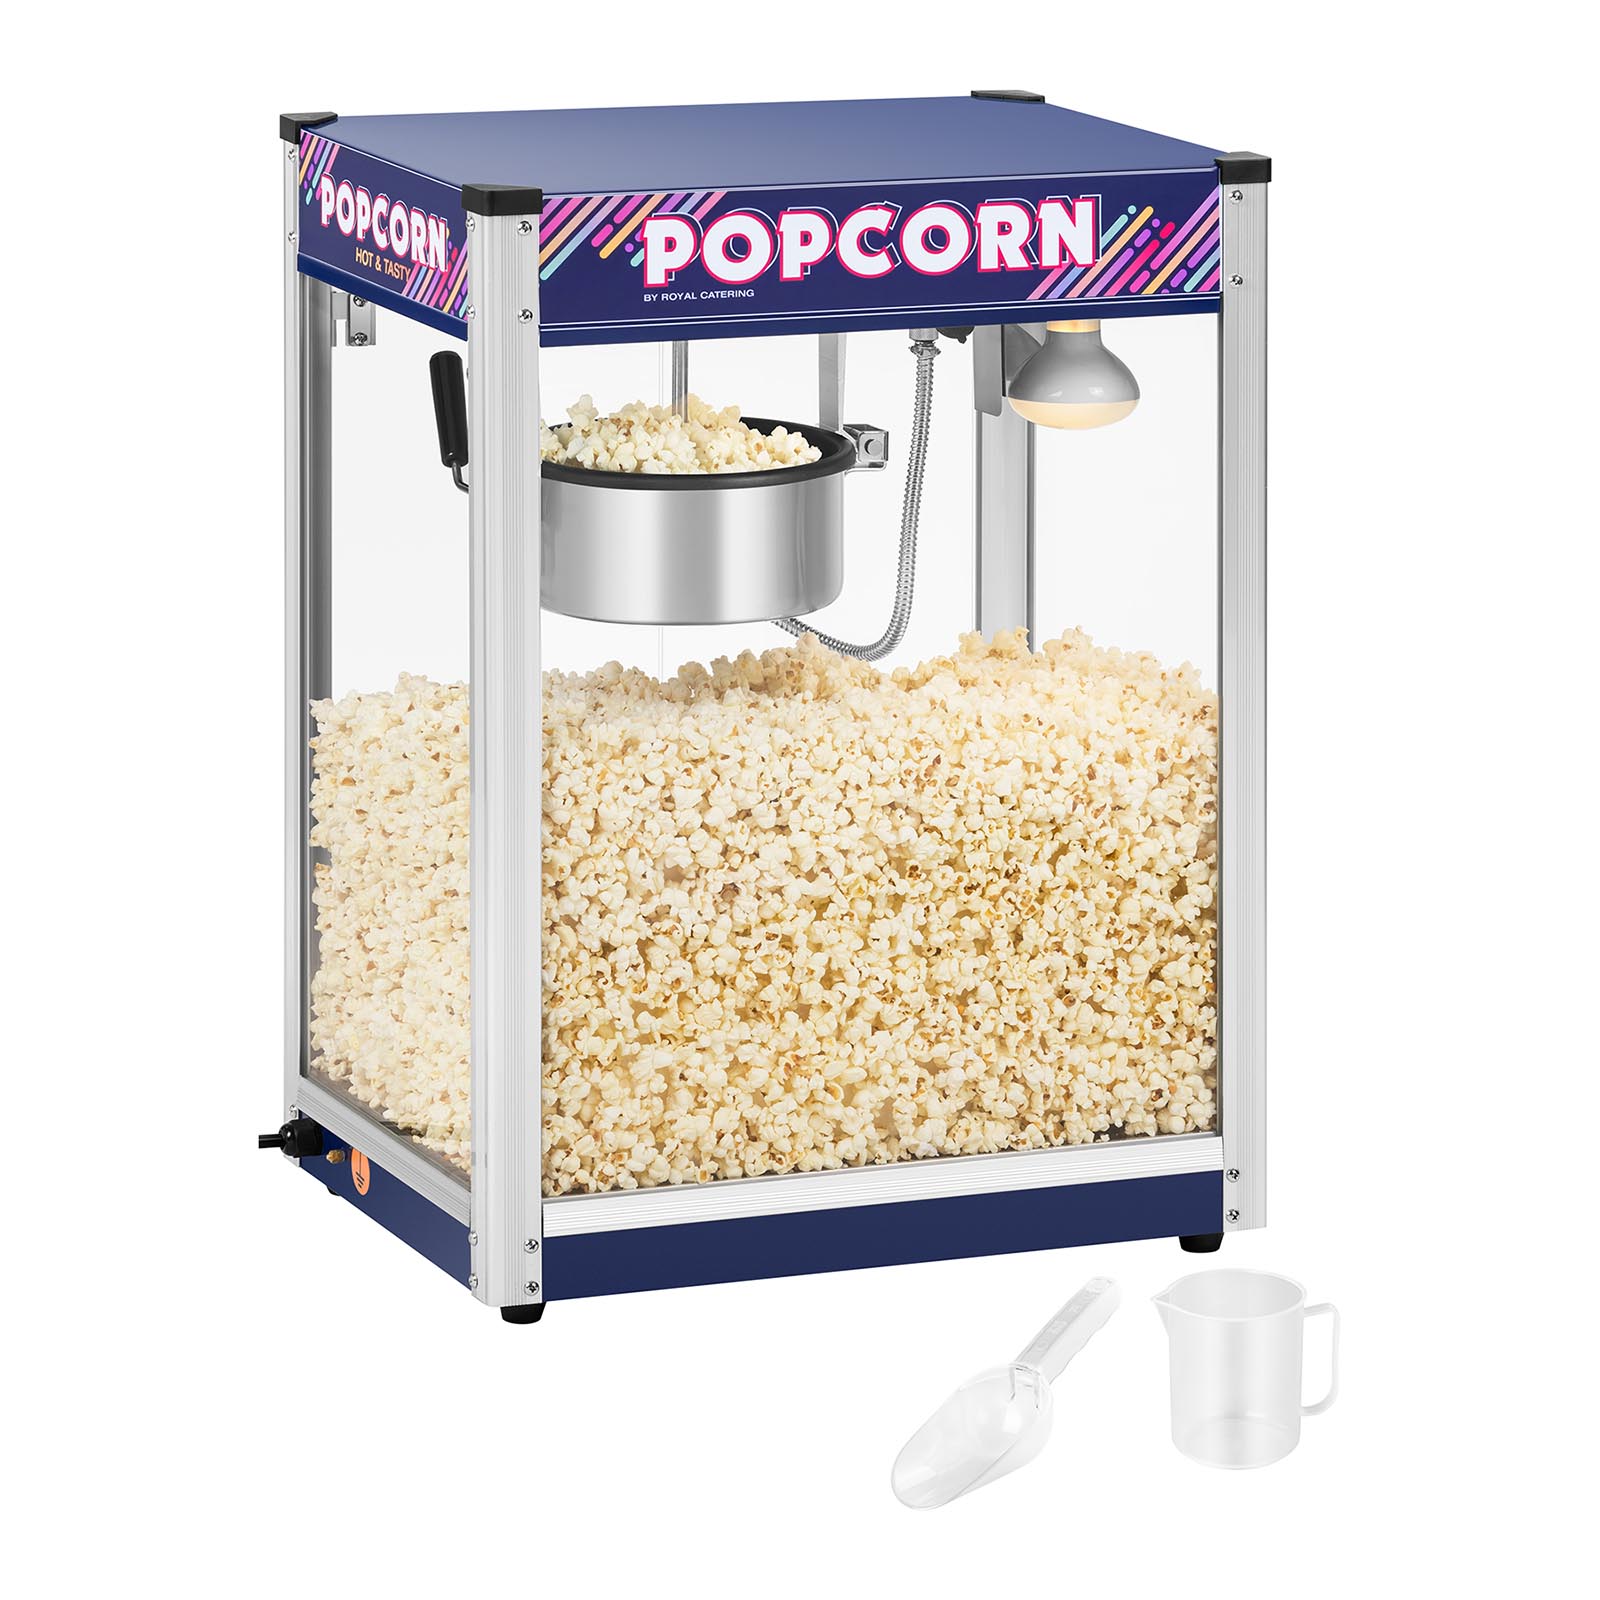 Stroj na popcorn - 8 oz Se strojem na popcorn RCPR-1350 od Royal Catering můžete profesionálně vyrábět čerstvý popcorn a současně jej optimálně skladovat a podávat teplý. Stroj je určen pro komerční využití.